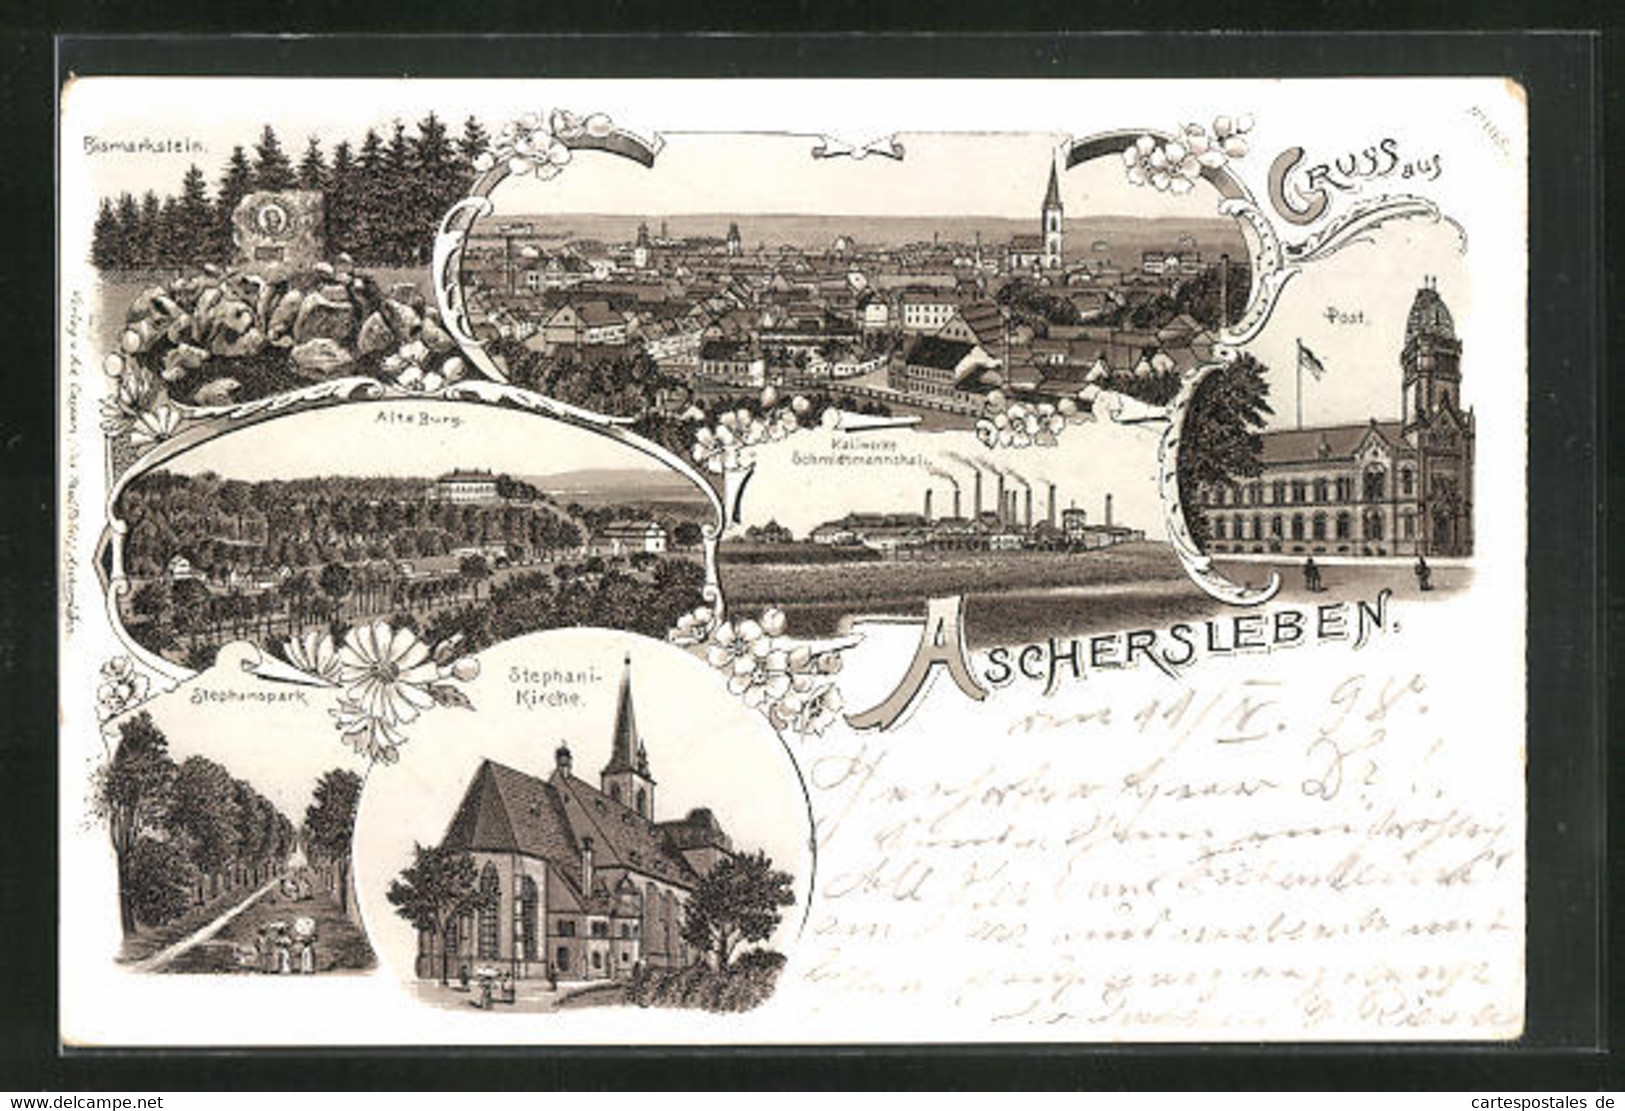 Lithographie Aschersleben, Bismarckstein, Alte Burg, Stephani-Kirche - Burg